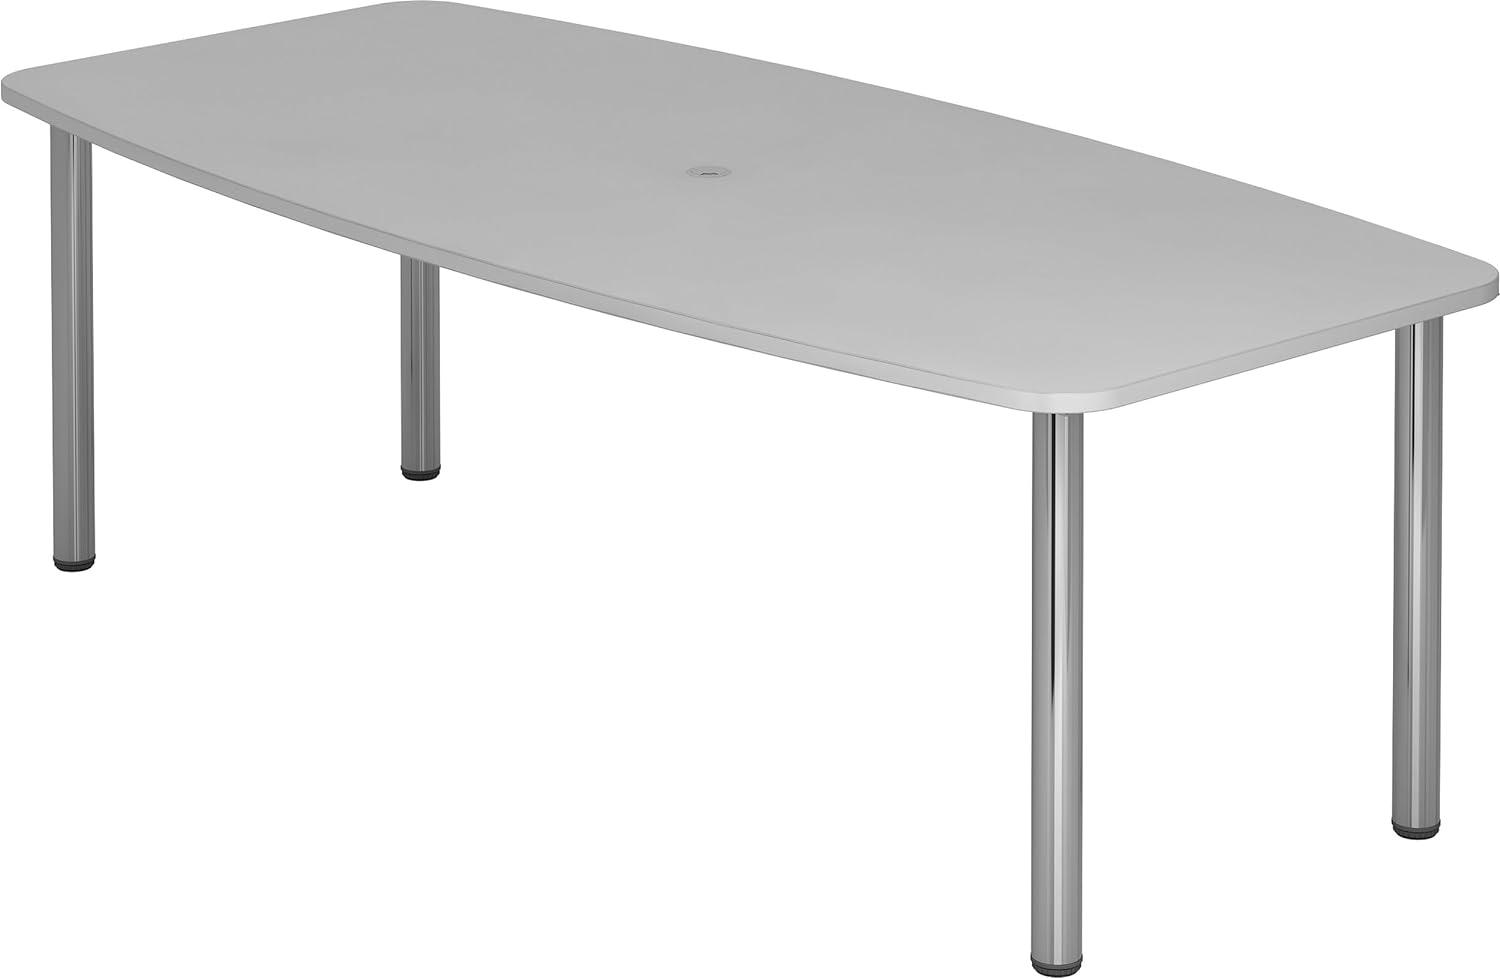 bümö® Konferenztisch rund oval 220 x 103 cm in Grau | Besprechungstisch mit Chromfüße | hochwertiger Meetingtisch Bild 1